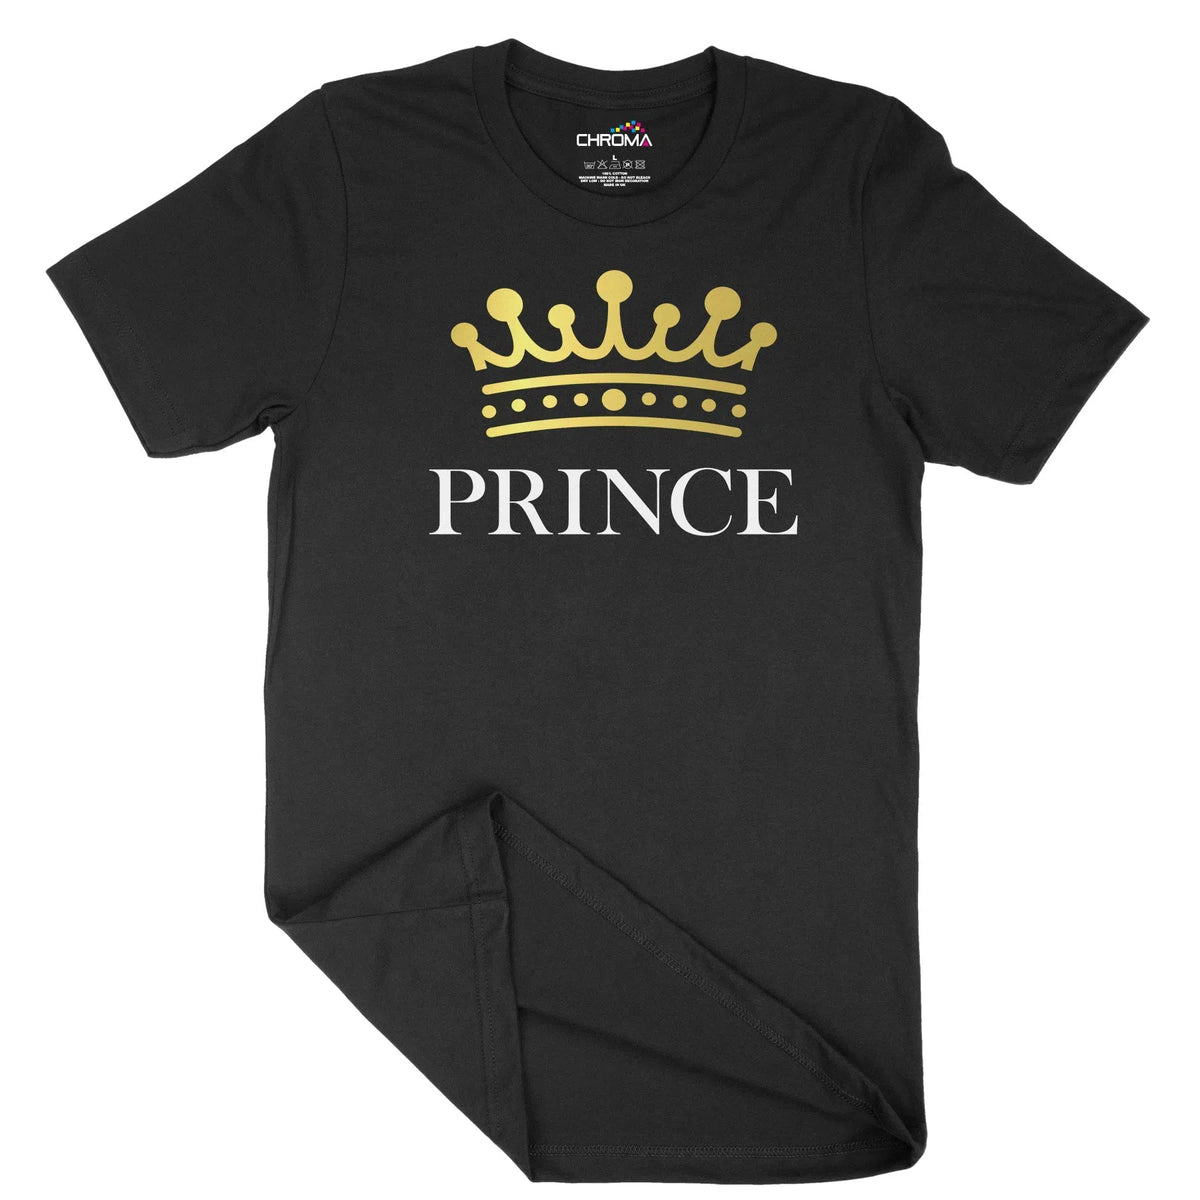 Prince Unisex Adult T-Shirt | Quality Slogan Clothing Chroma Clothing